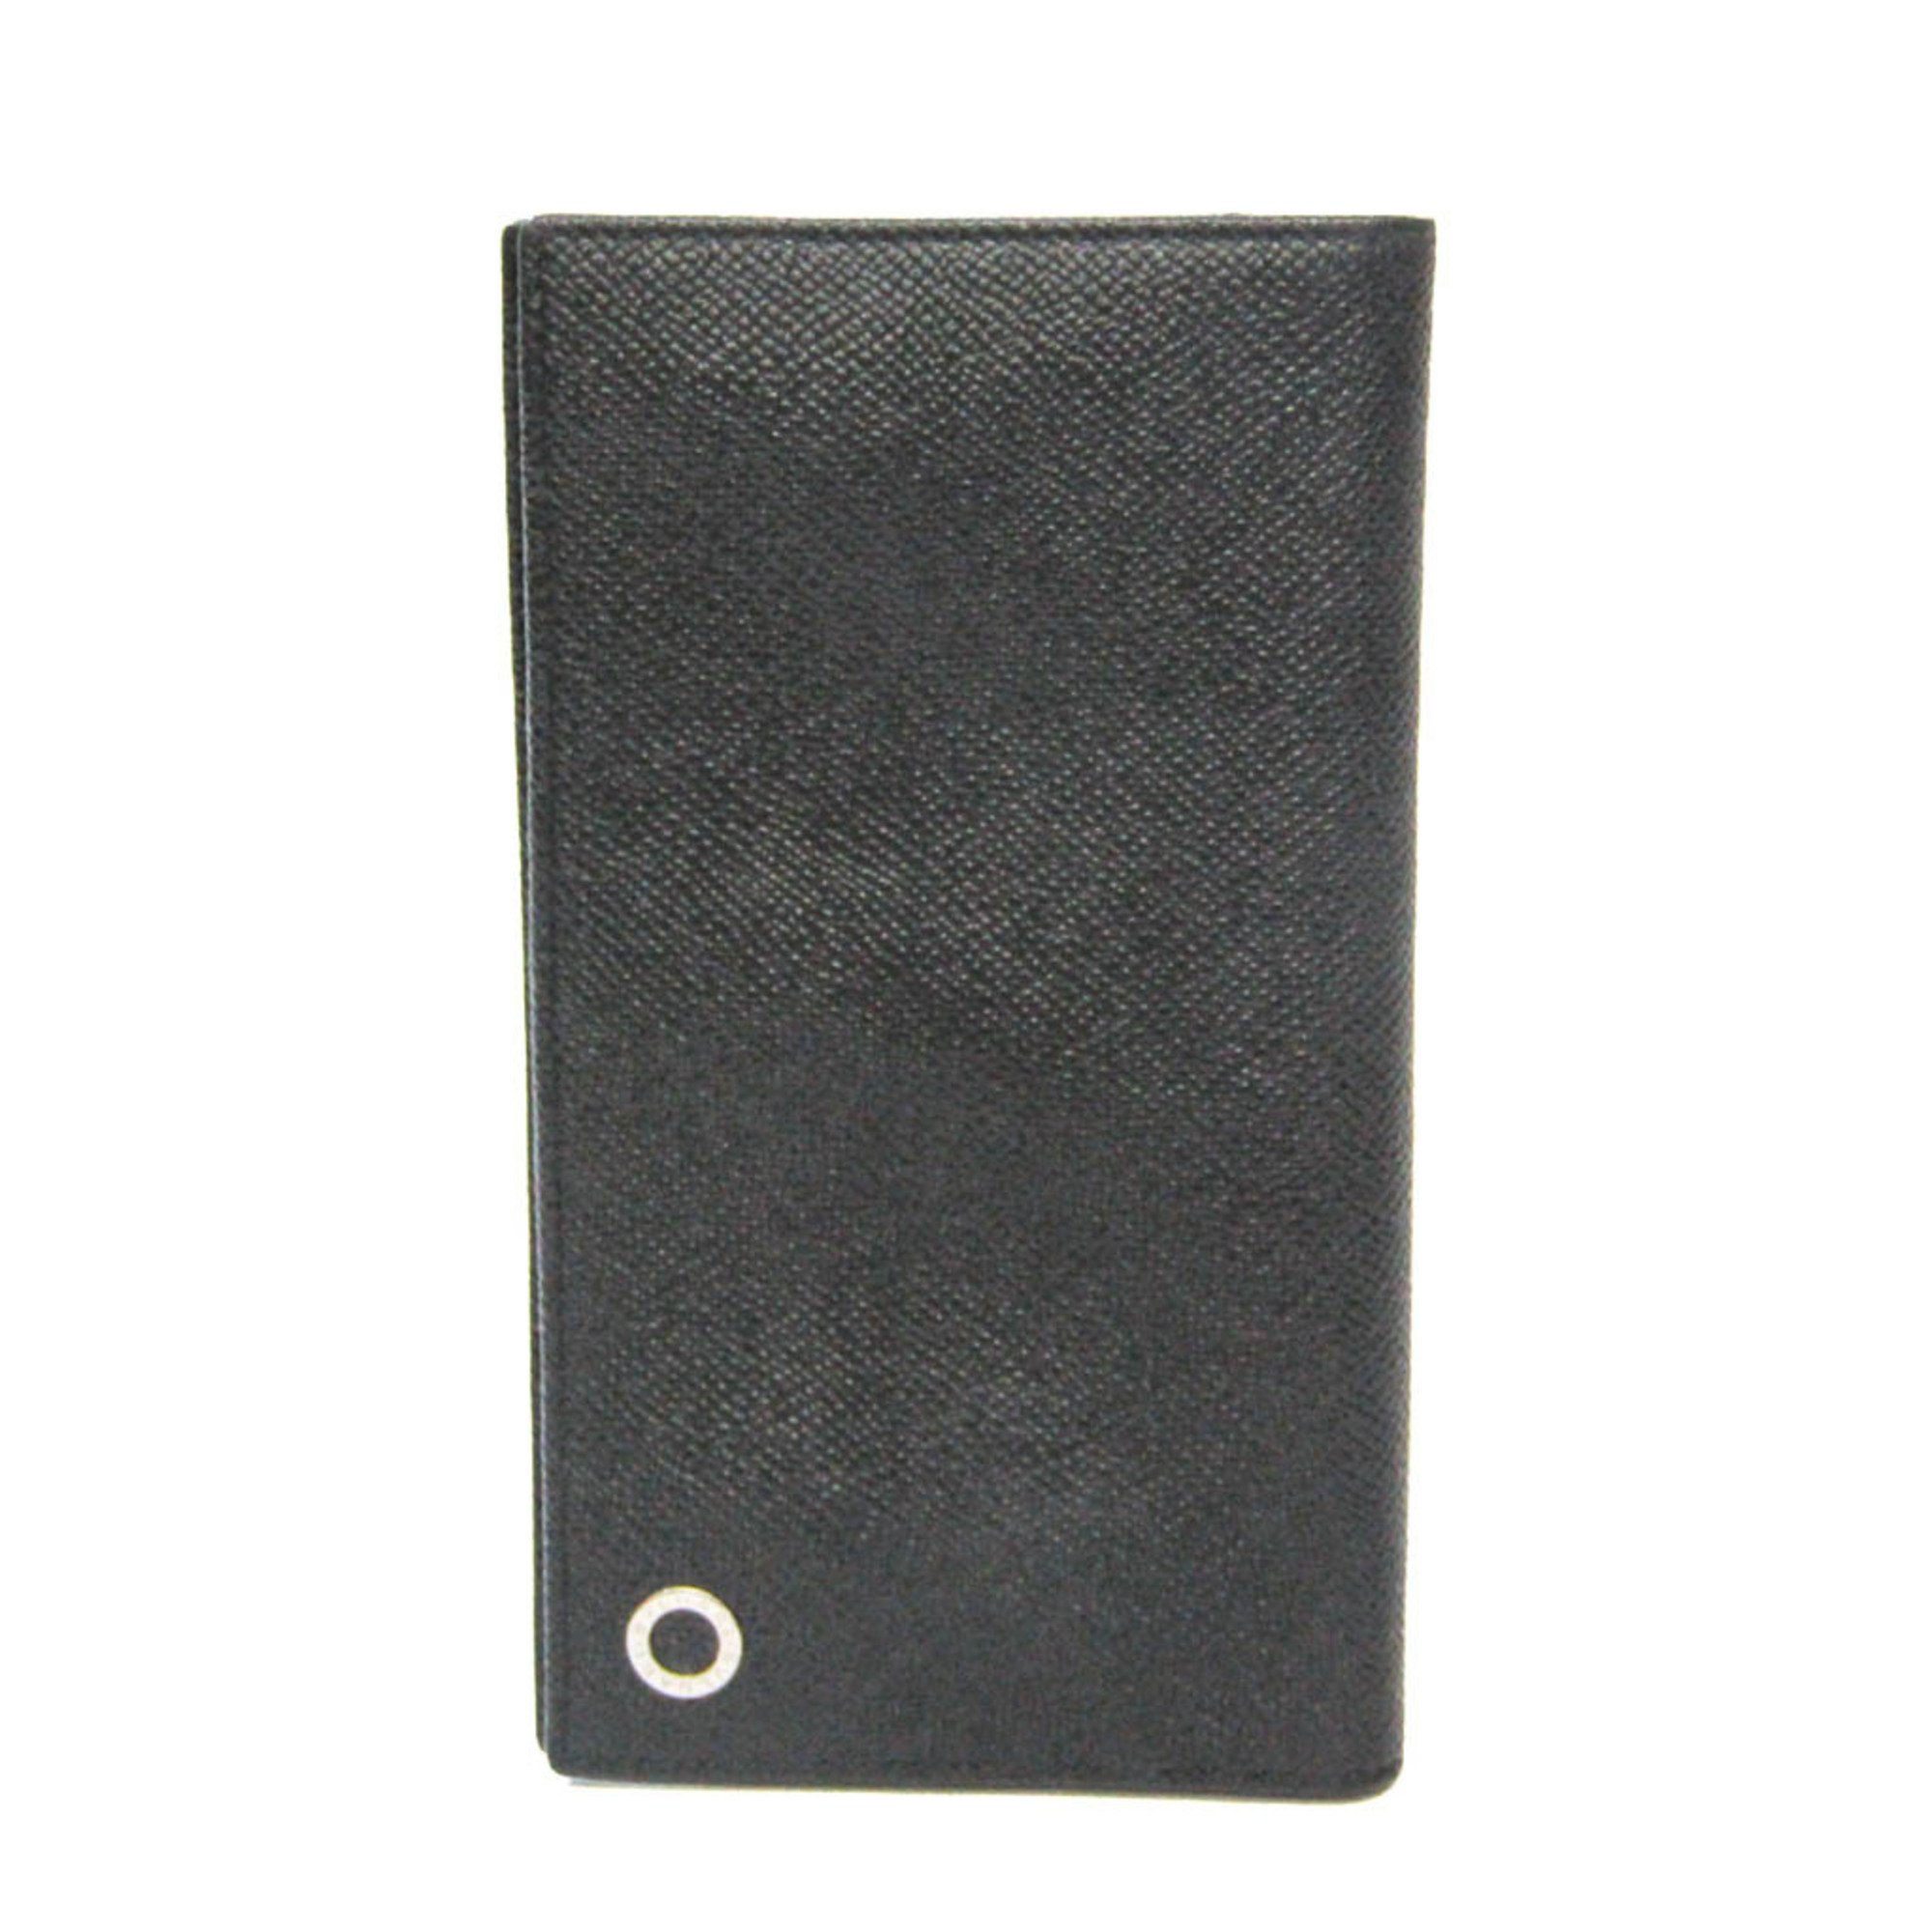 ブルガリ 二つ折長財布 レザー ブラック ブルー 付属品あり - 小物